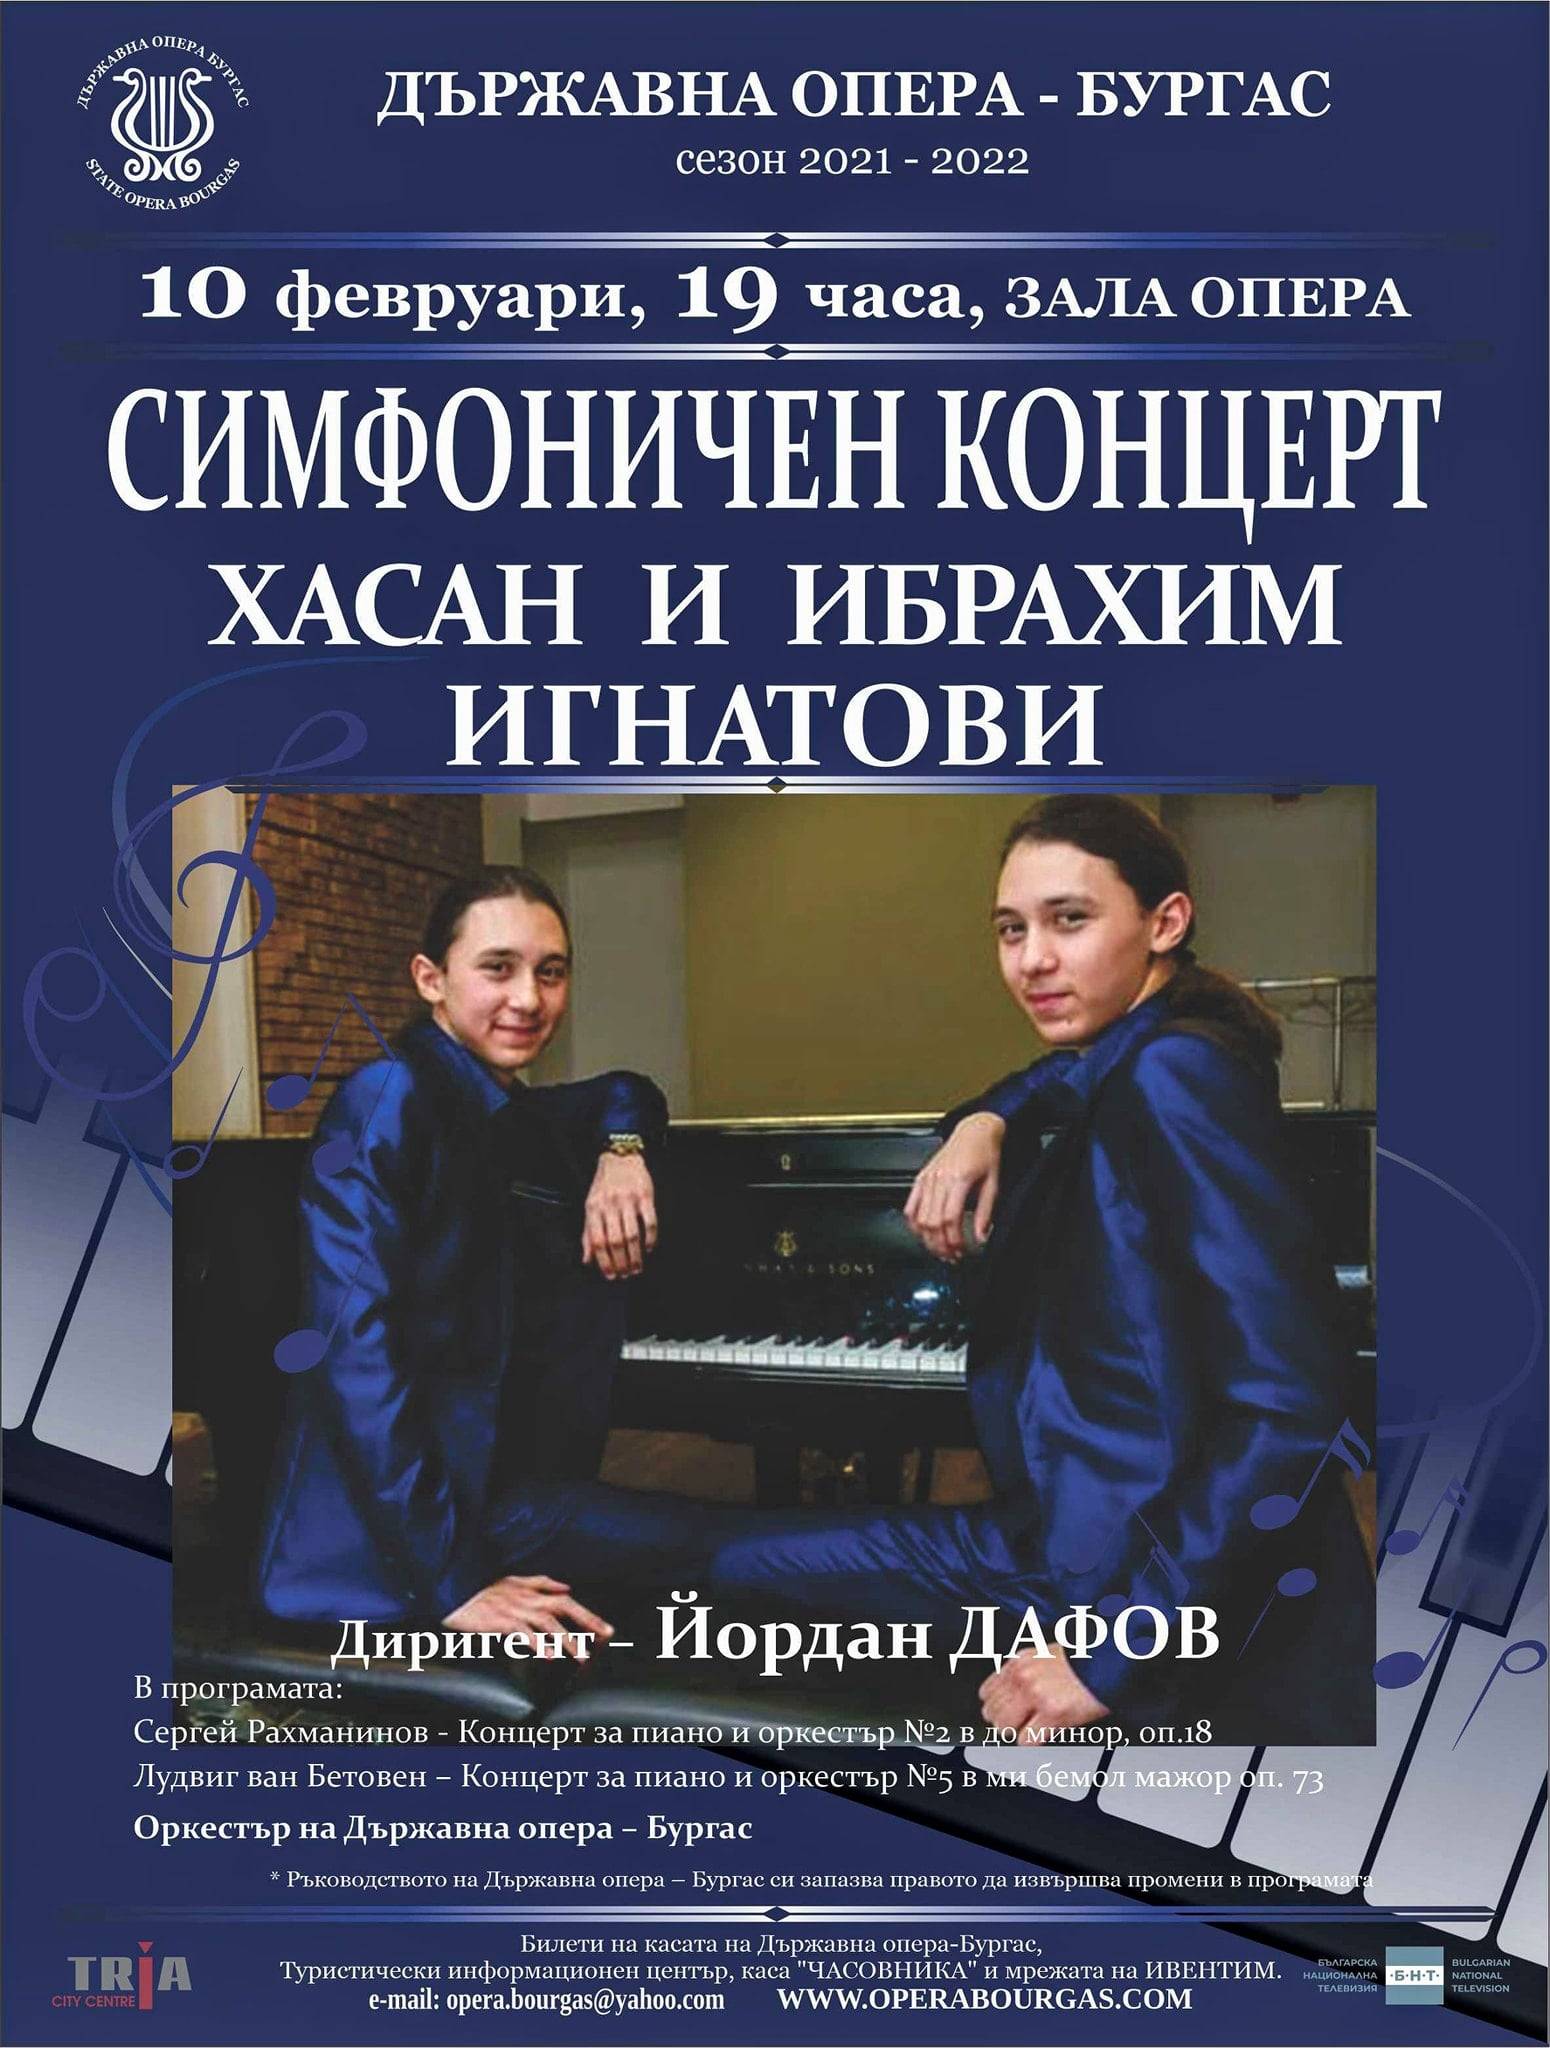  Именитите пианисти Хасан и Ибрахим Игнатови свирят на бургаска сцена в четвъртък 